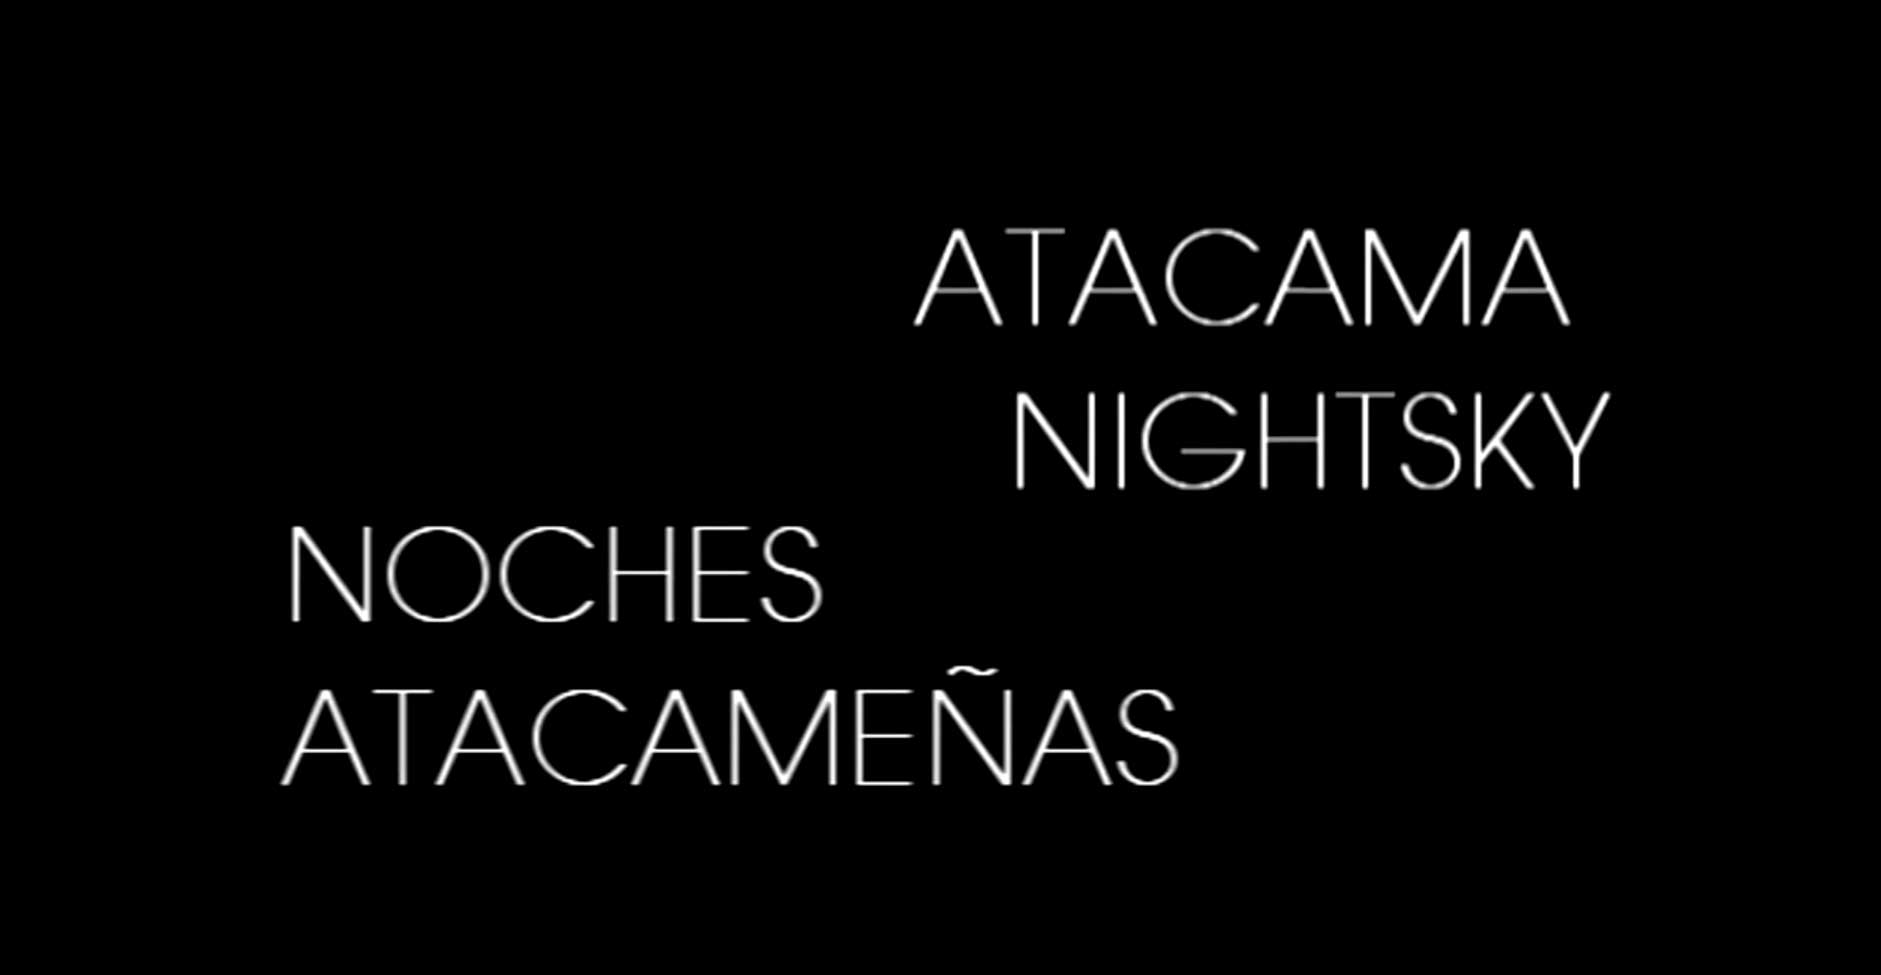 Atacama nightsky – Noches atacameñas